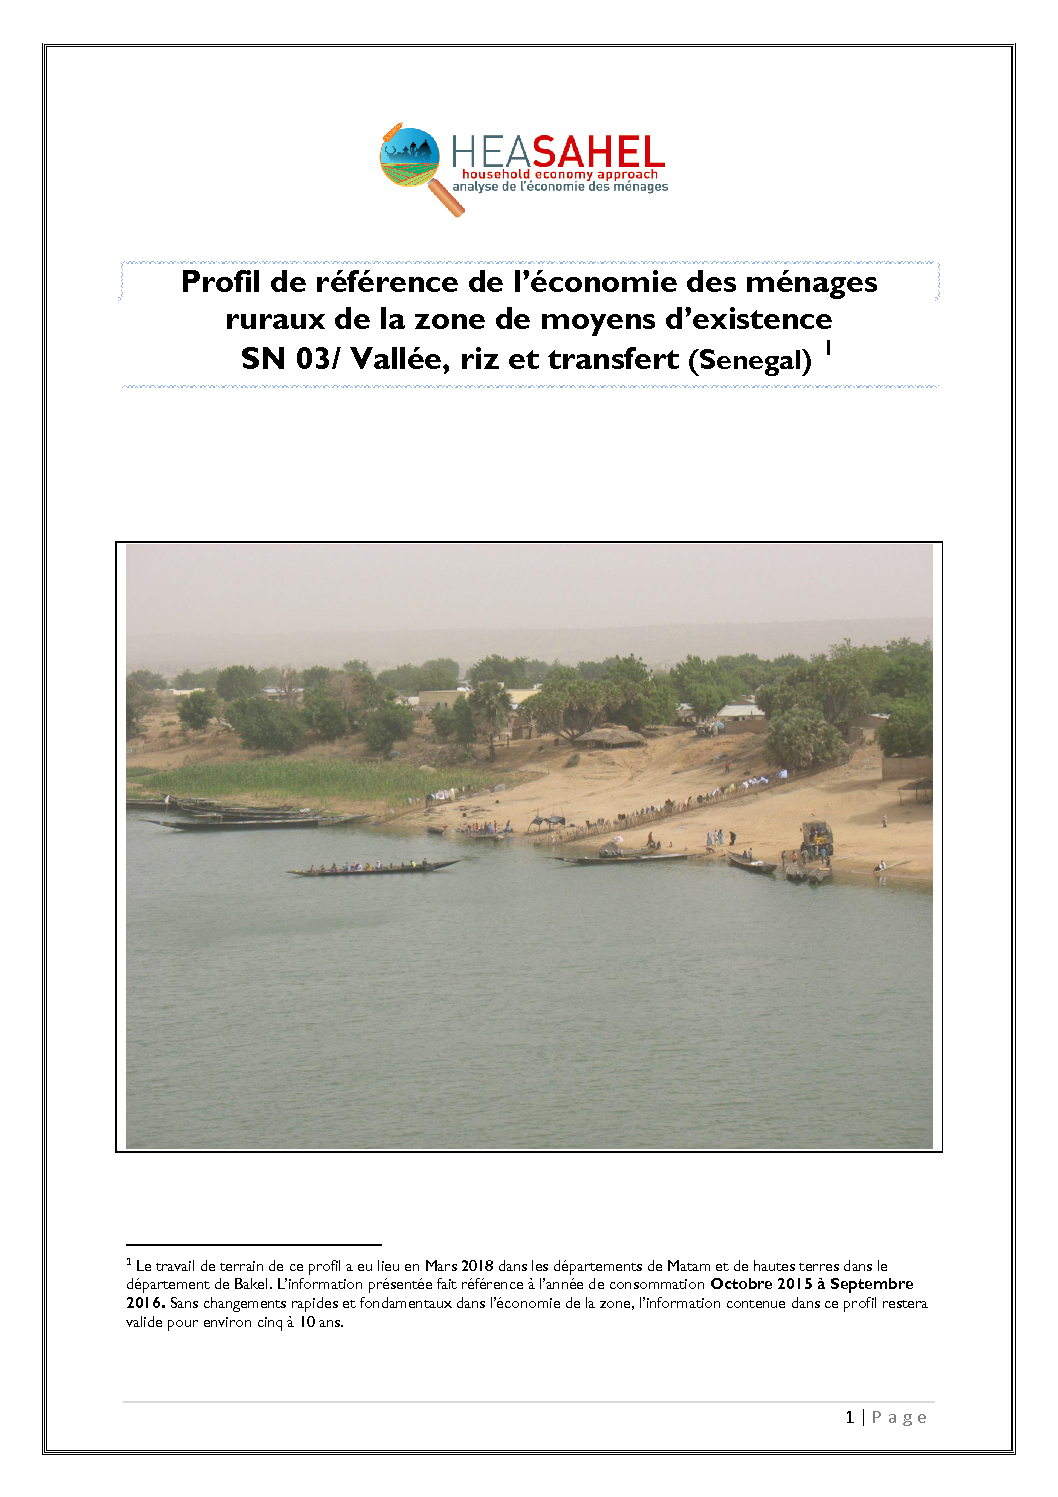 Profil Senegal - SN03 - Matam et Bakel  - Mars 2018